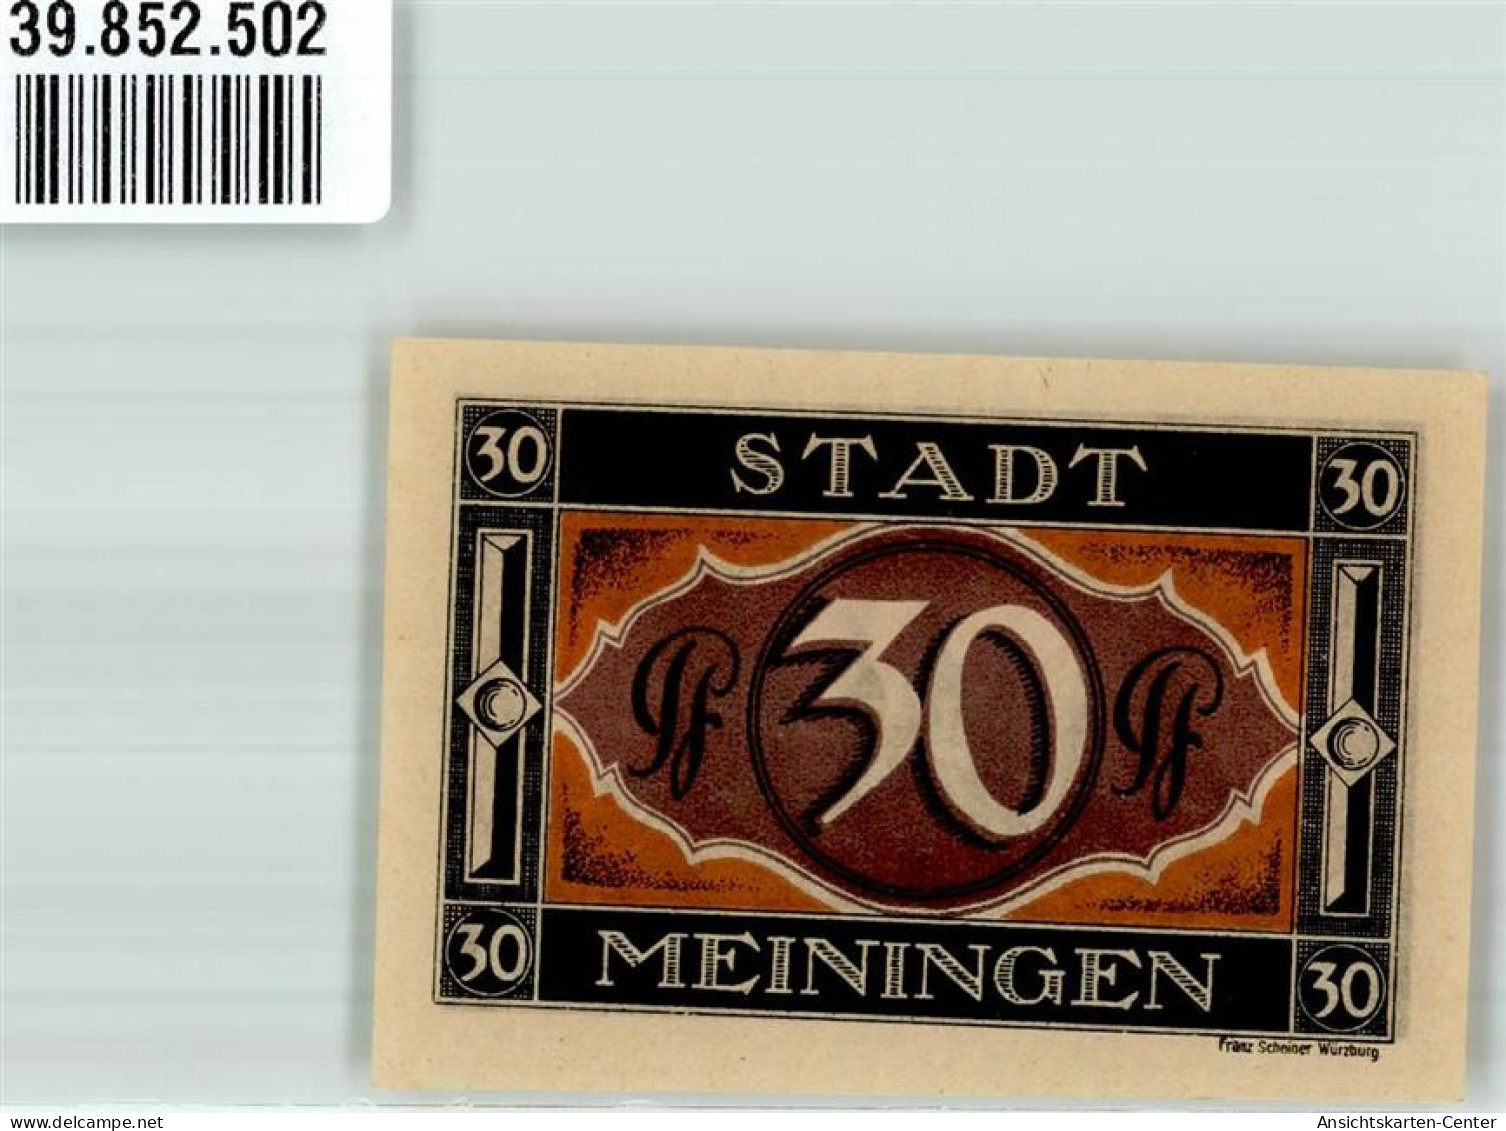 39852502 - Meiningen - Meiningen